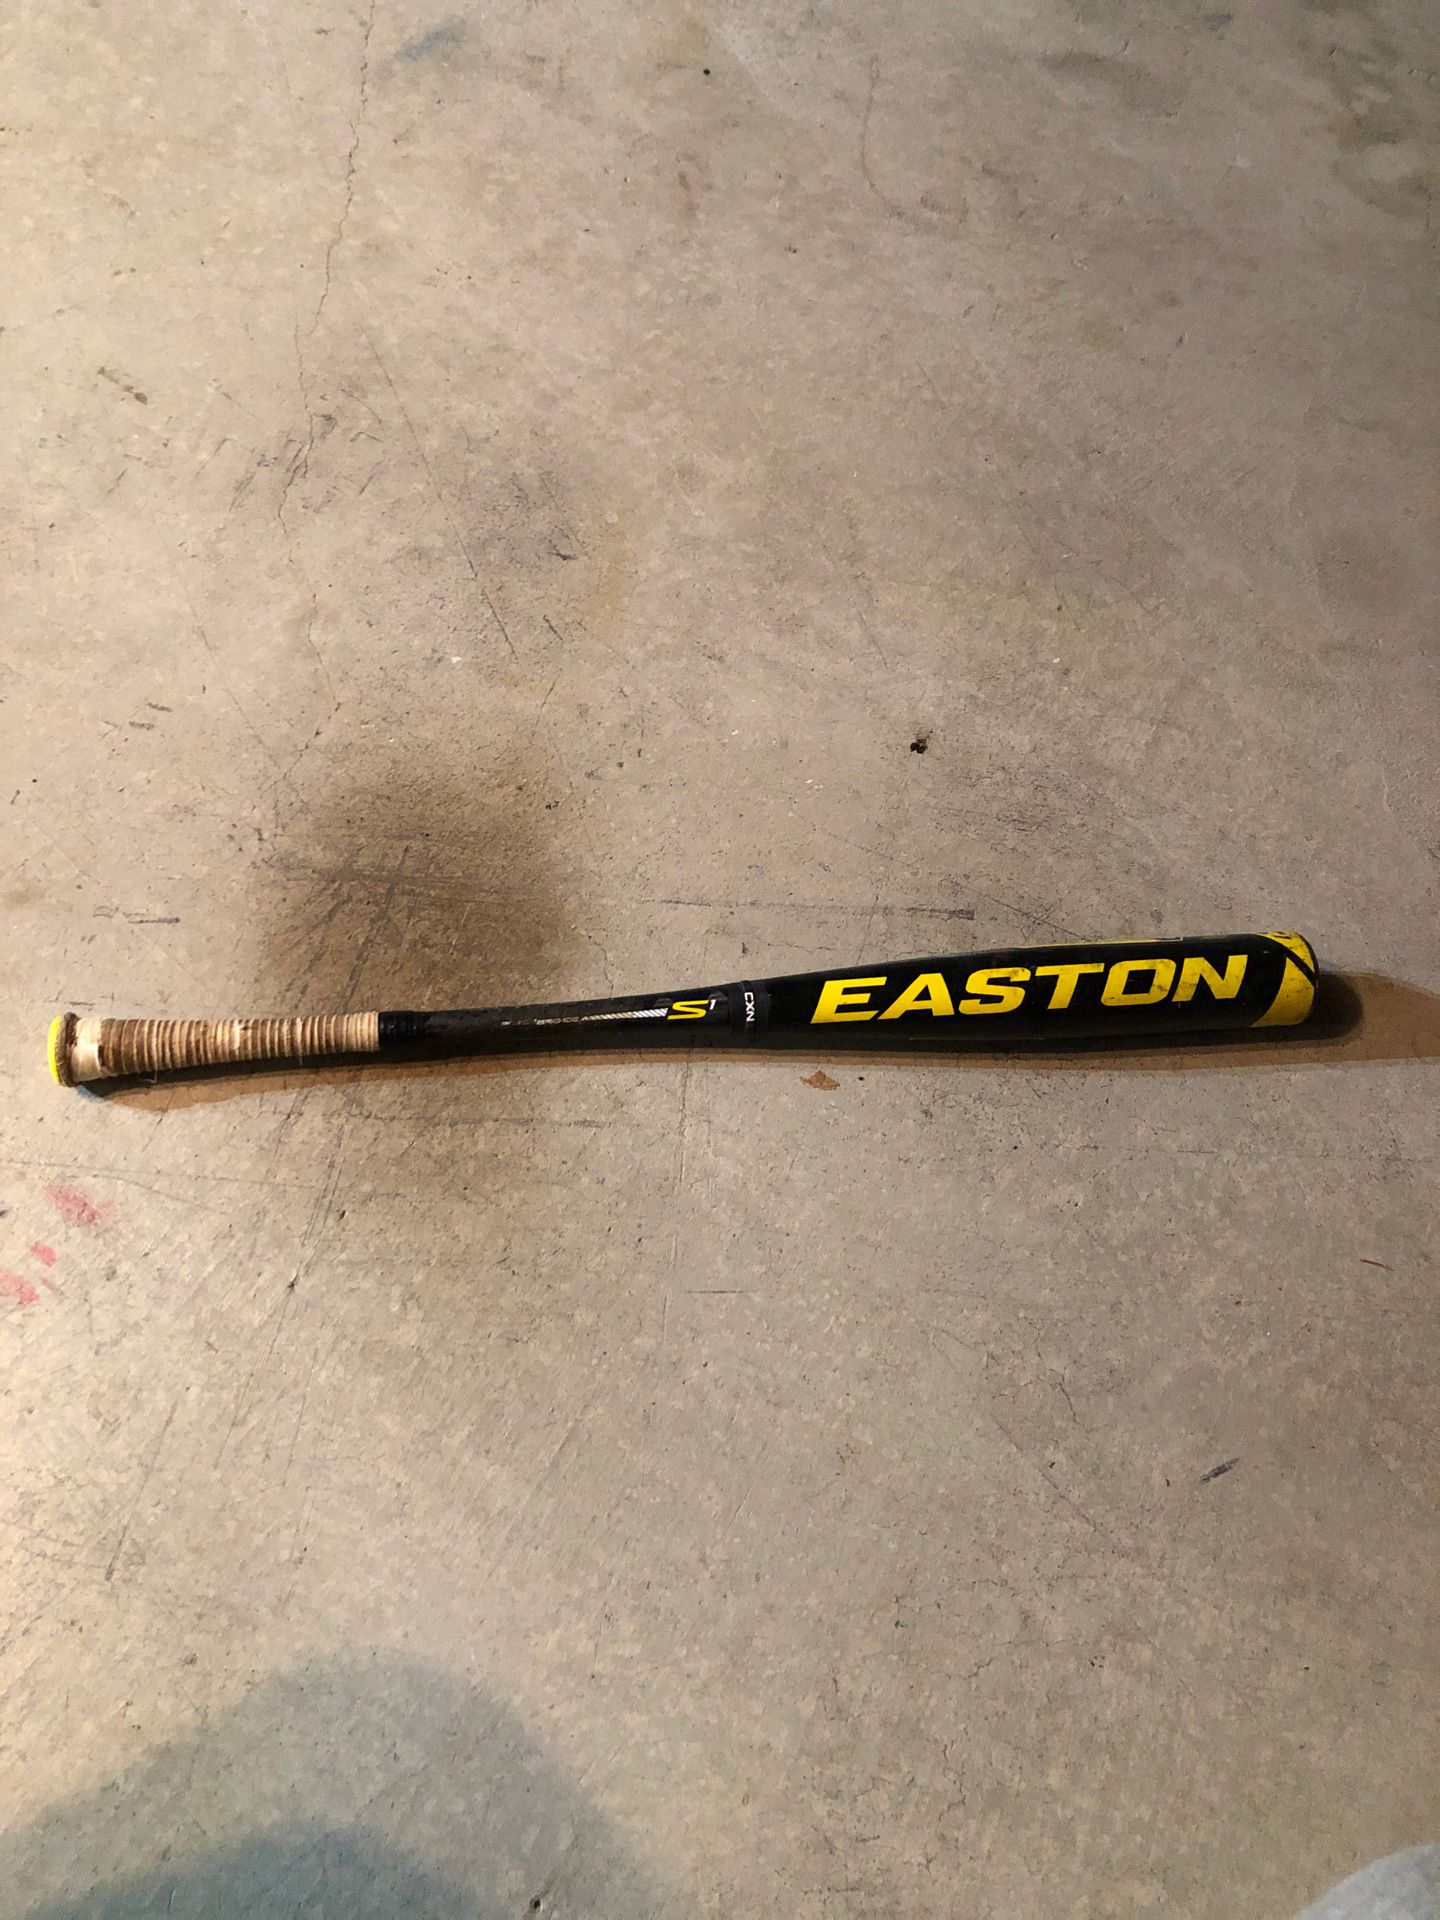 Men’s Easton S1 Baseball Bat